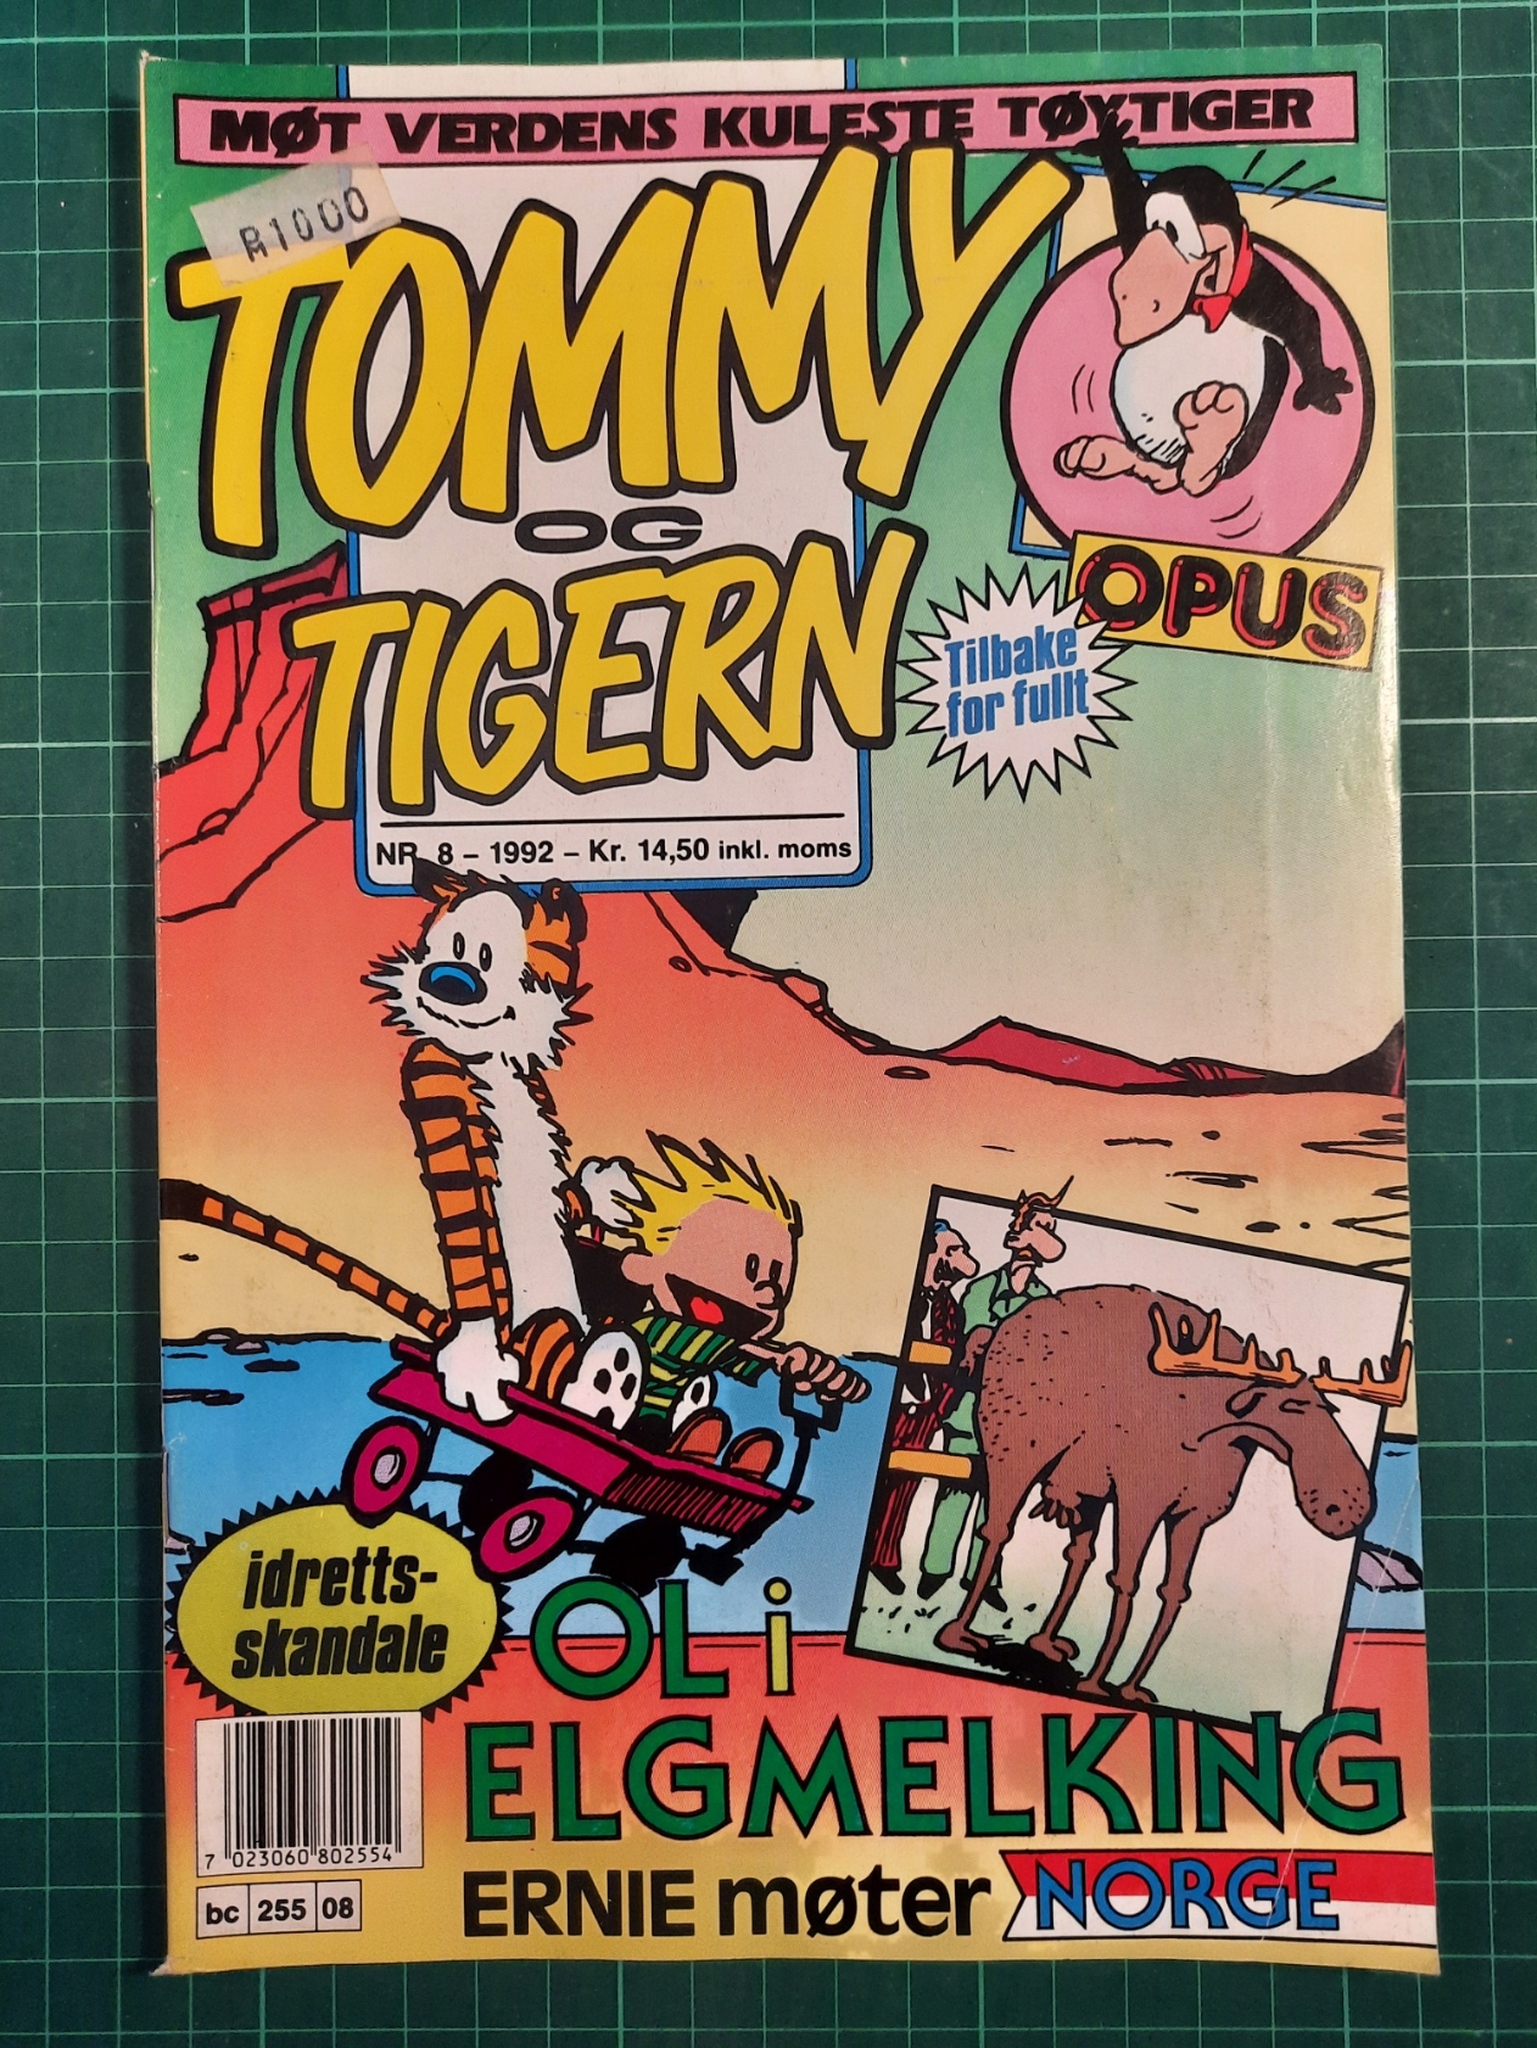 Tommy og Tigern 1992 - 08